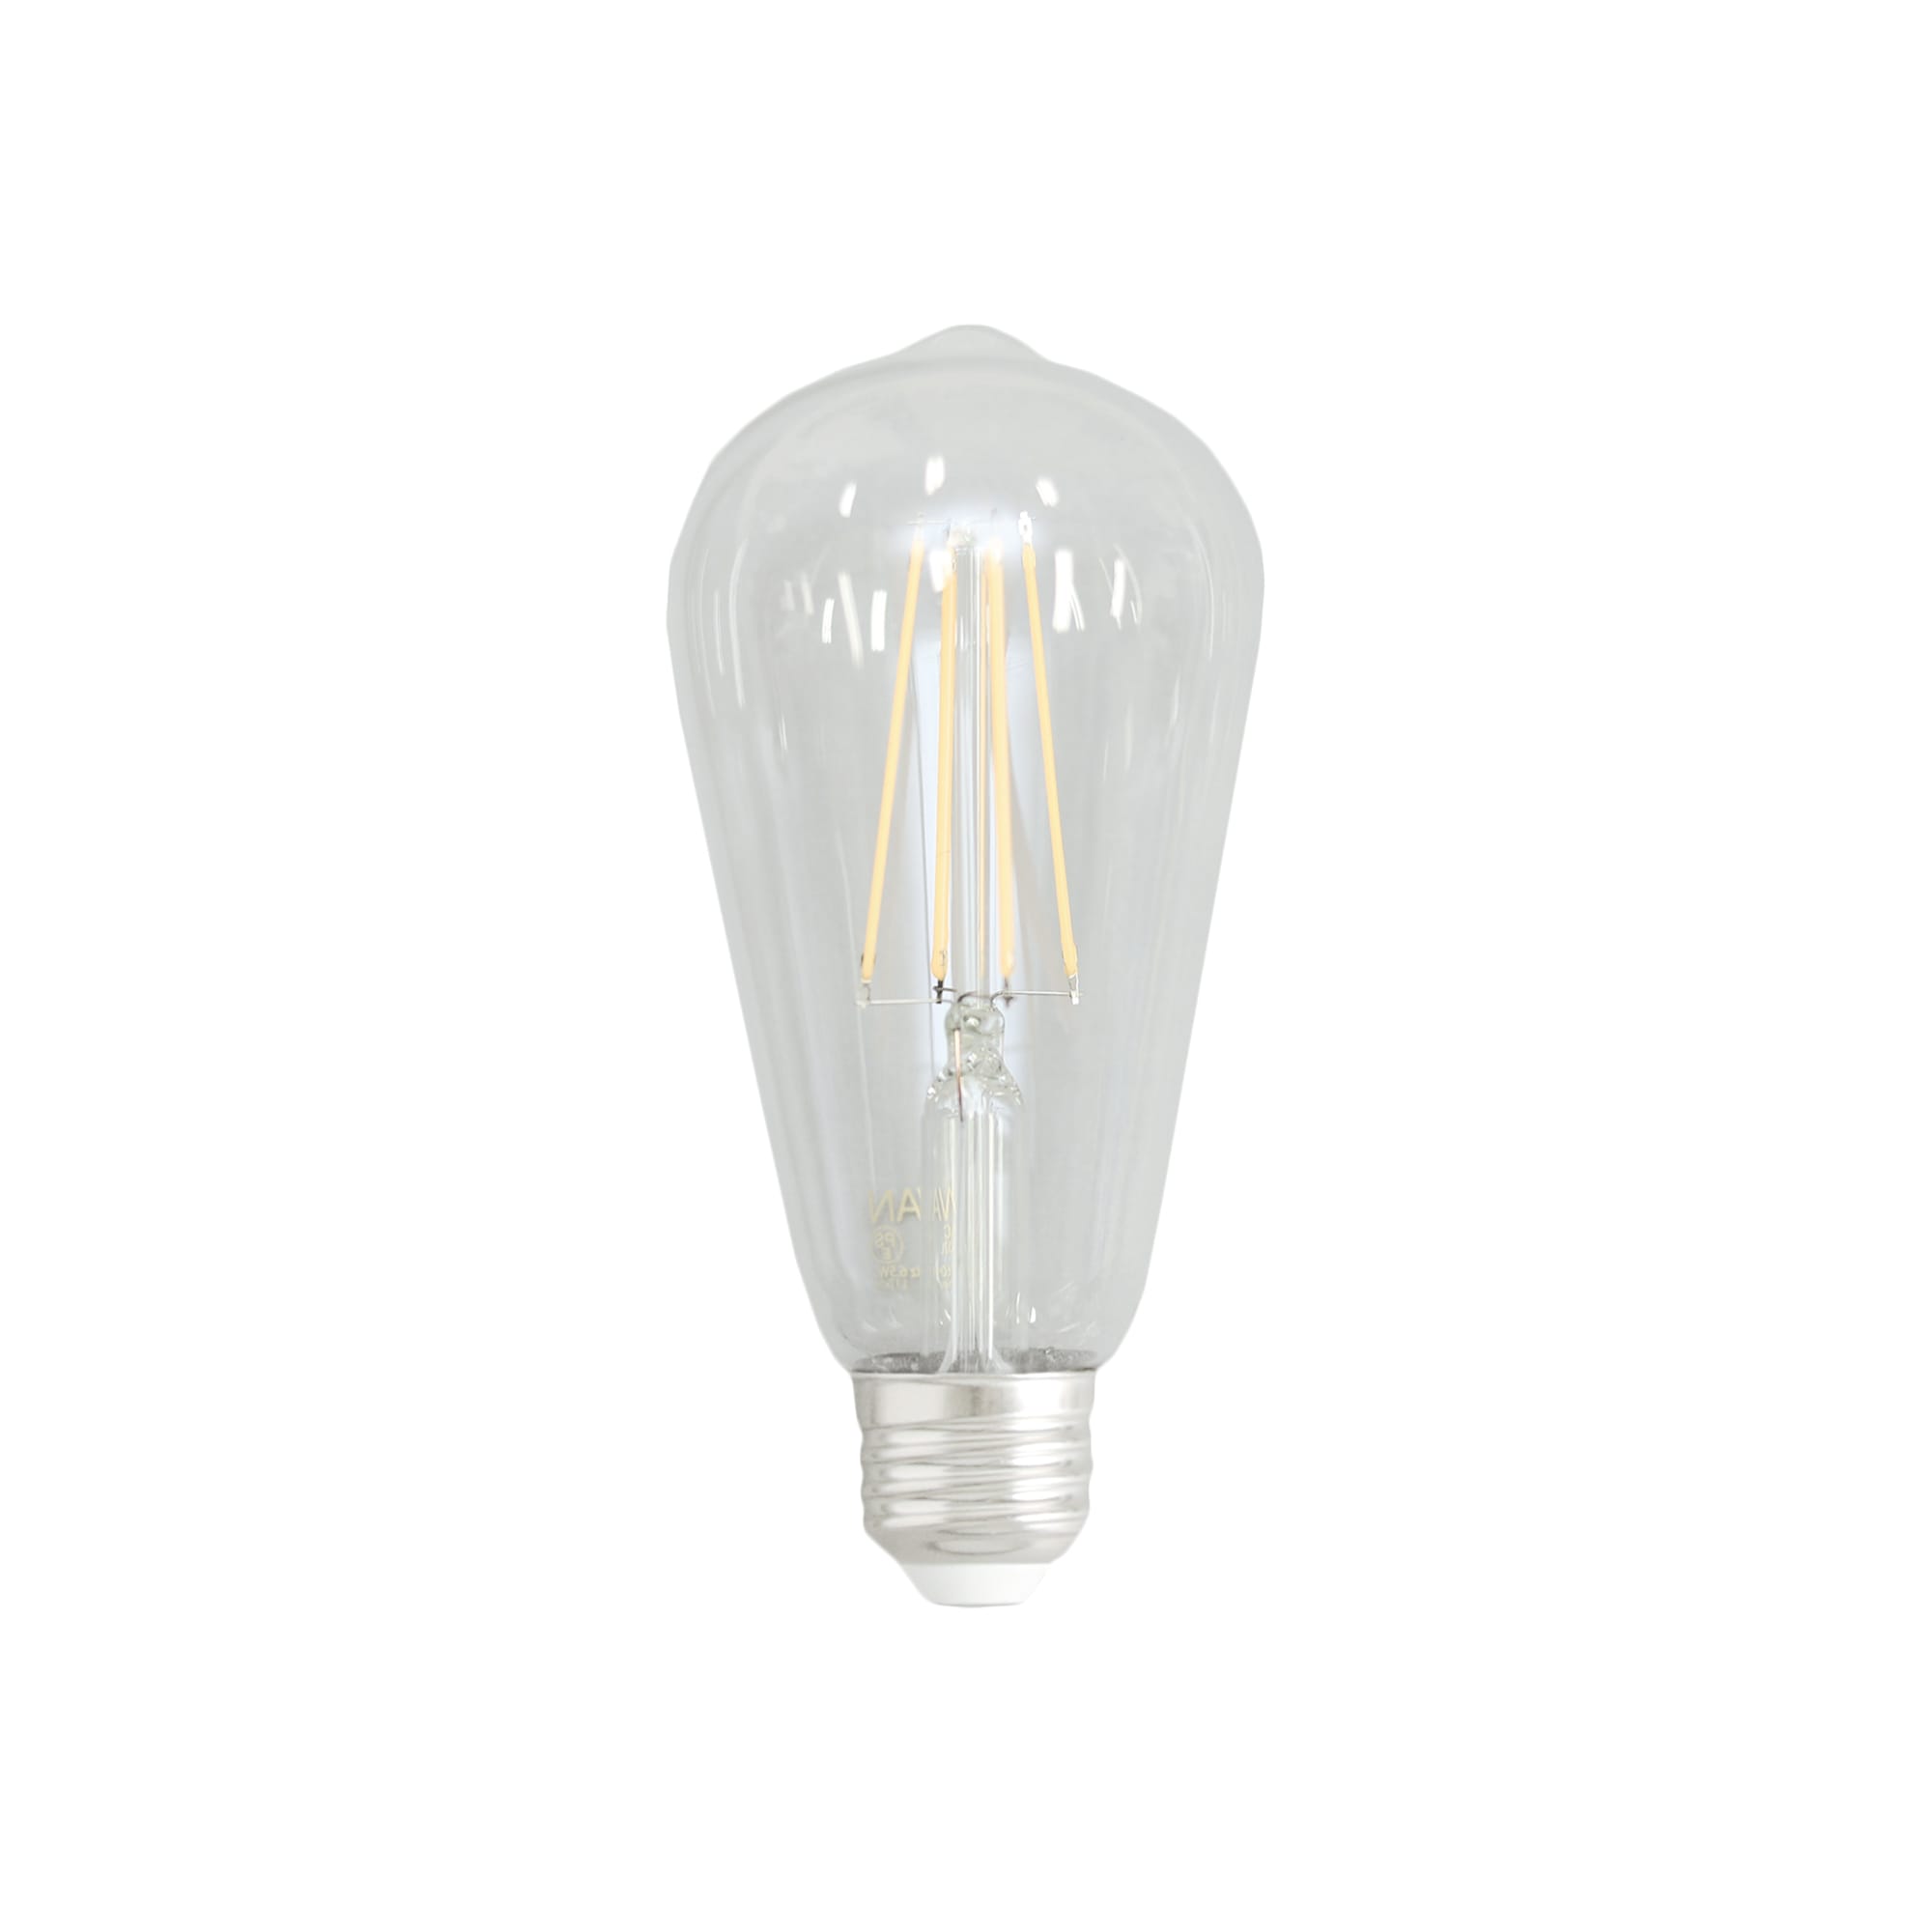 ビンテージLED電球 LEDエジソン(E26)60W相当 LT-BB002-06-G141 60W相当と明るいタイプのフィラメント型LED電球